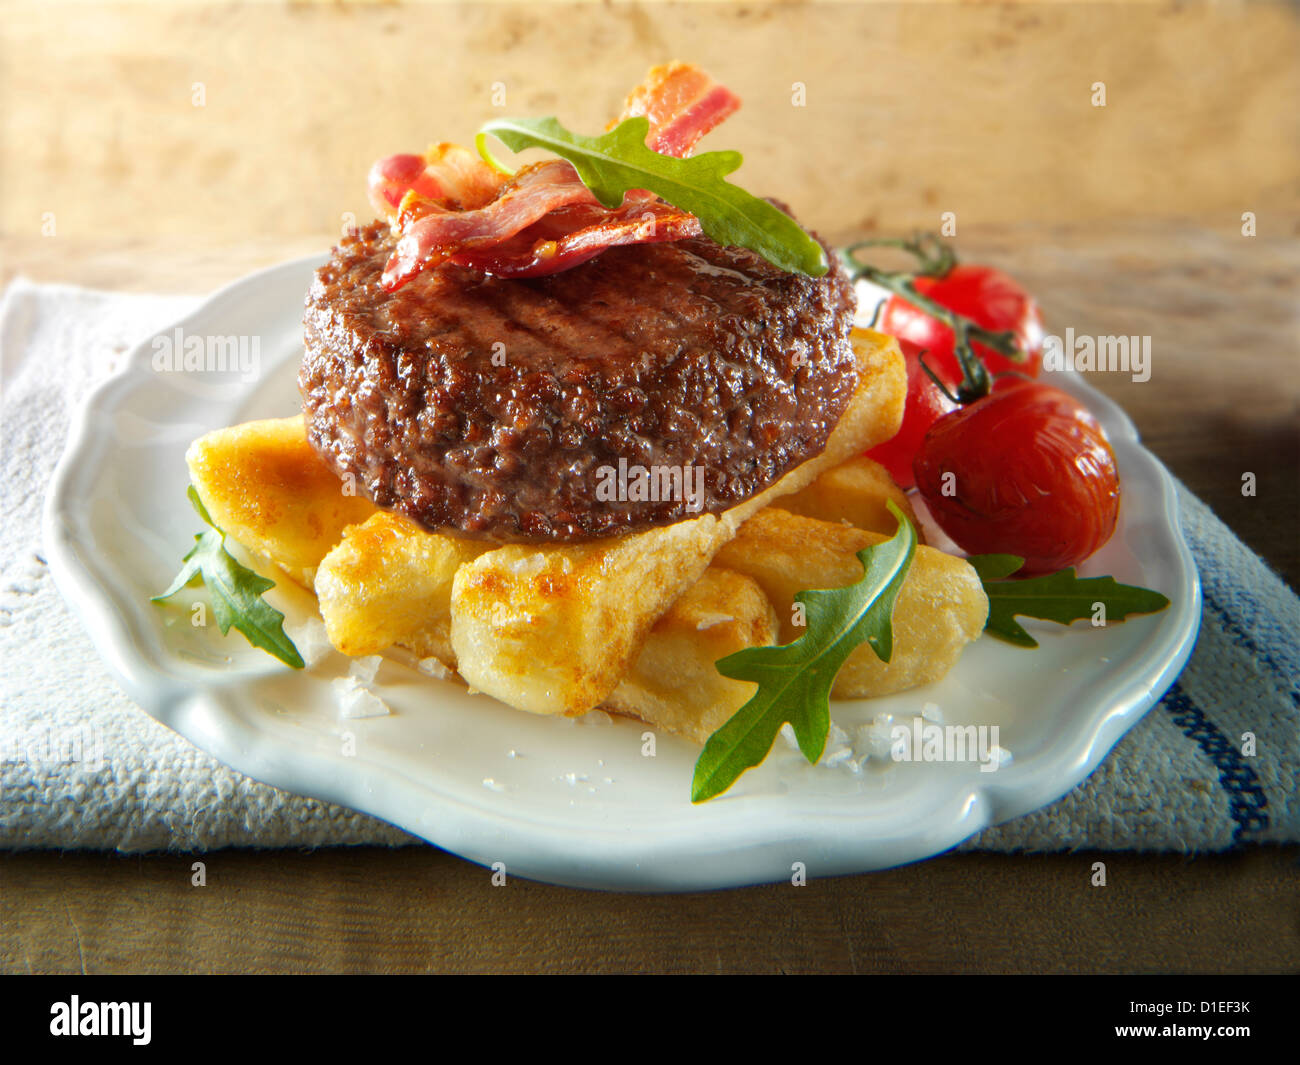 Gegrilltes Rindfleisch-Burger mit klobigen Pommes Frites und Salat Fotos Char. Stockfoto